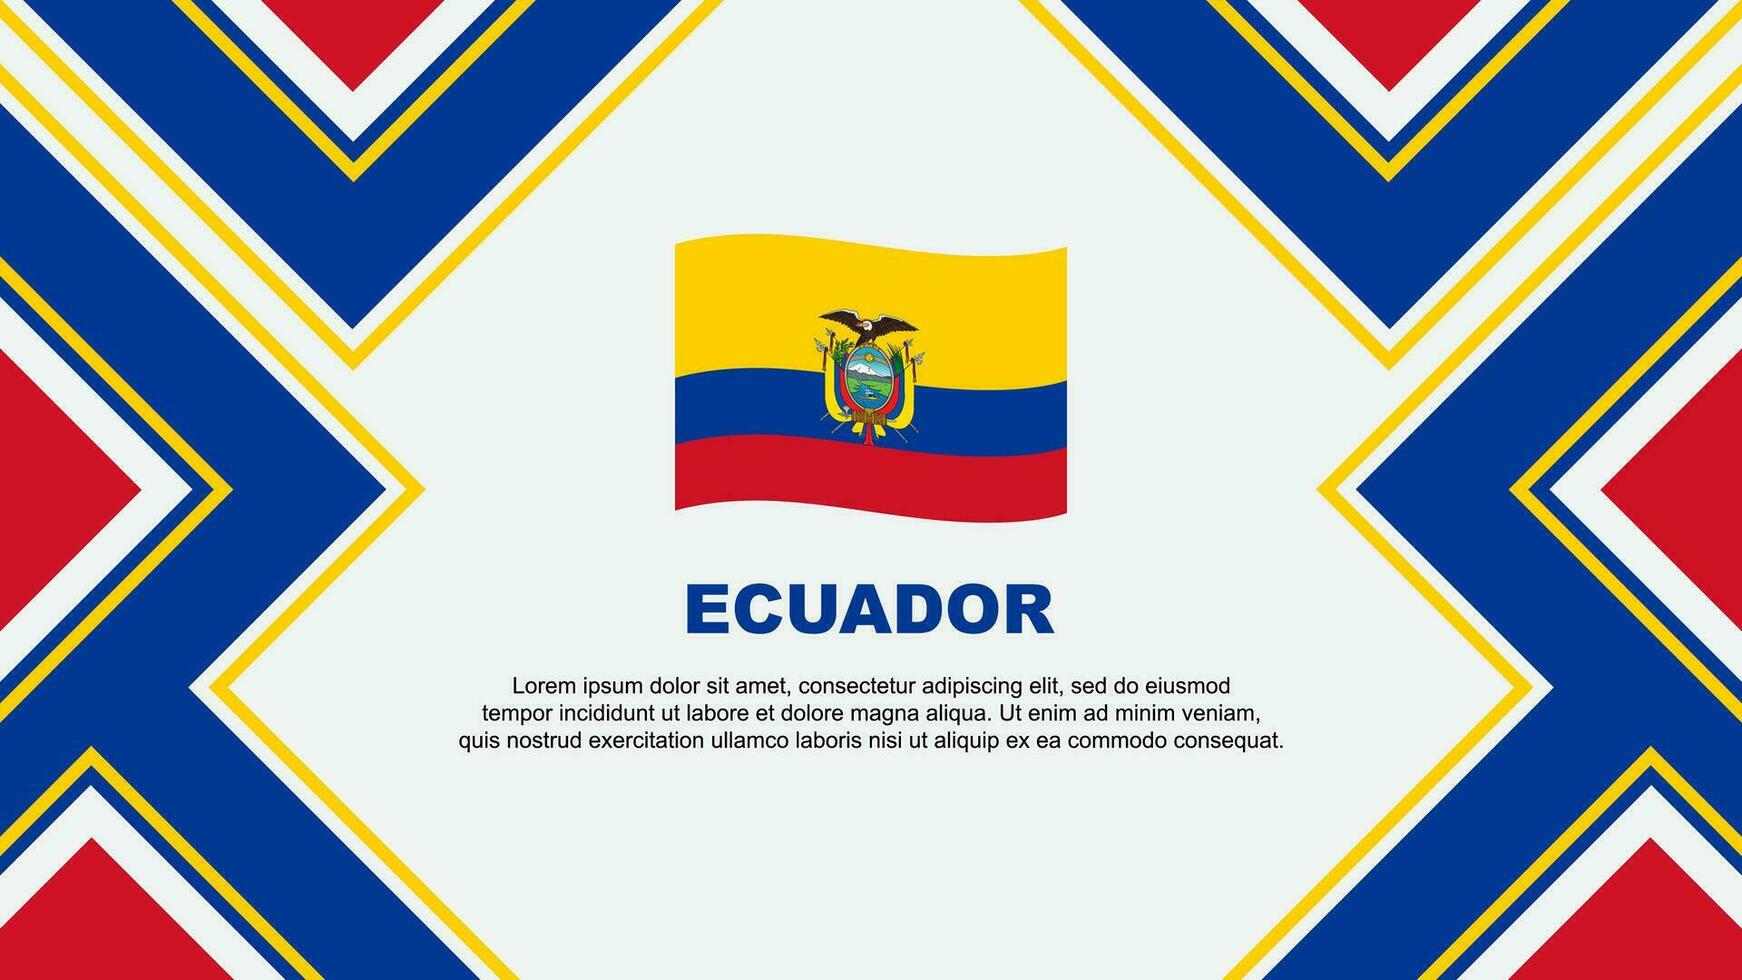 Ecuador Flag Abstract Background Design Template. Ecuador Independence Day Banner Wallpaper Vector Illustration. Ecuador Vector